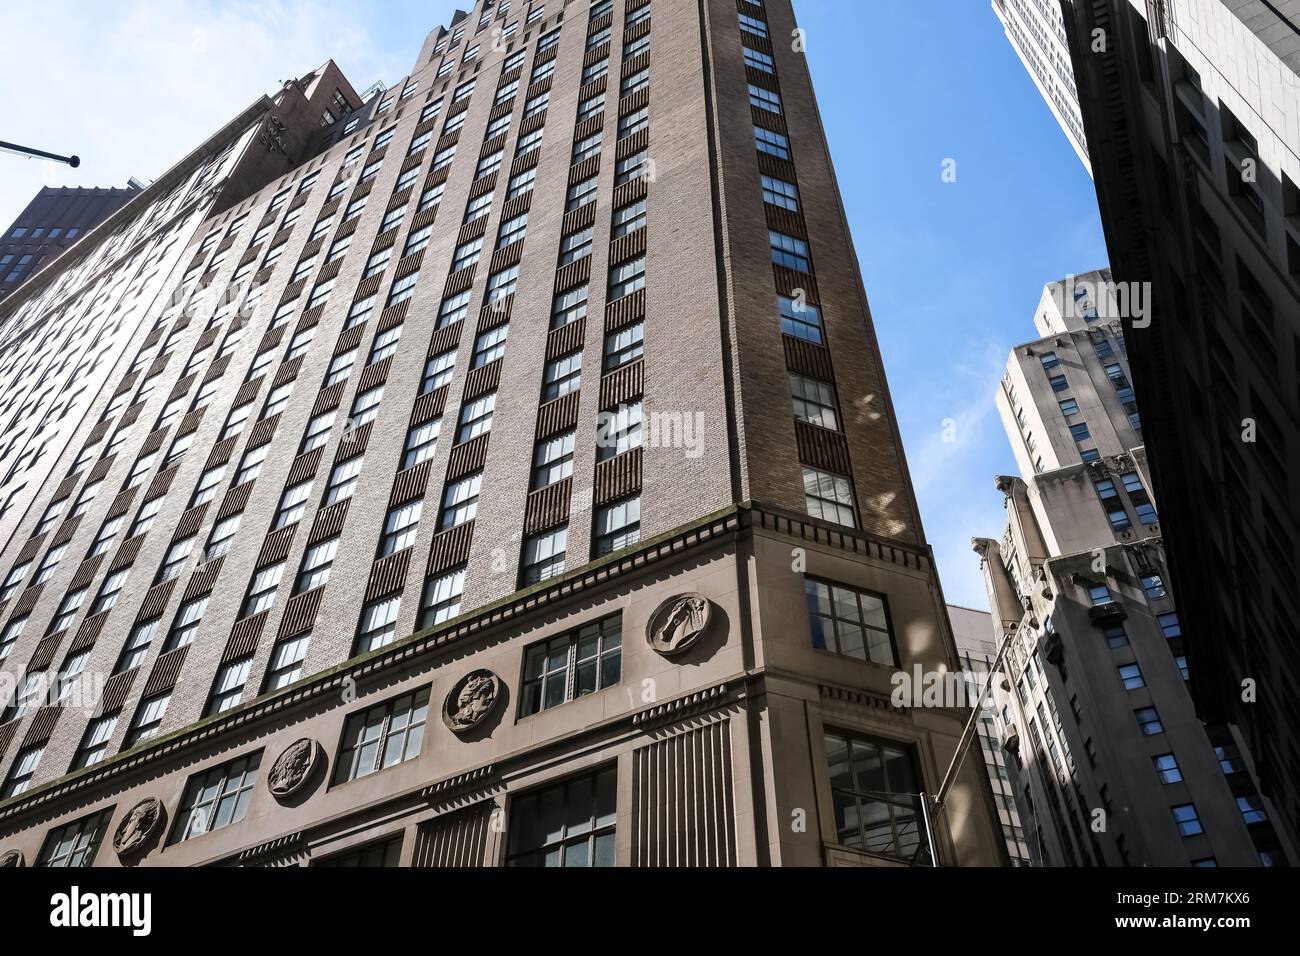 Architektonische Details der Kreuzung von Hanover Street und Wall Street im Finanzviertel von Lower Manhattan in New York City, USA Stockfoto